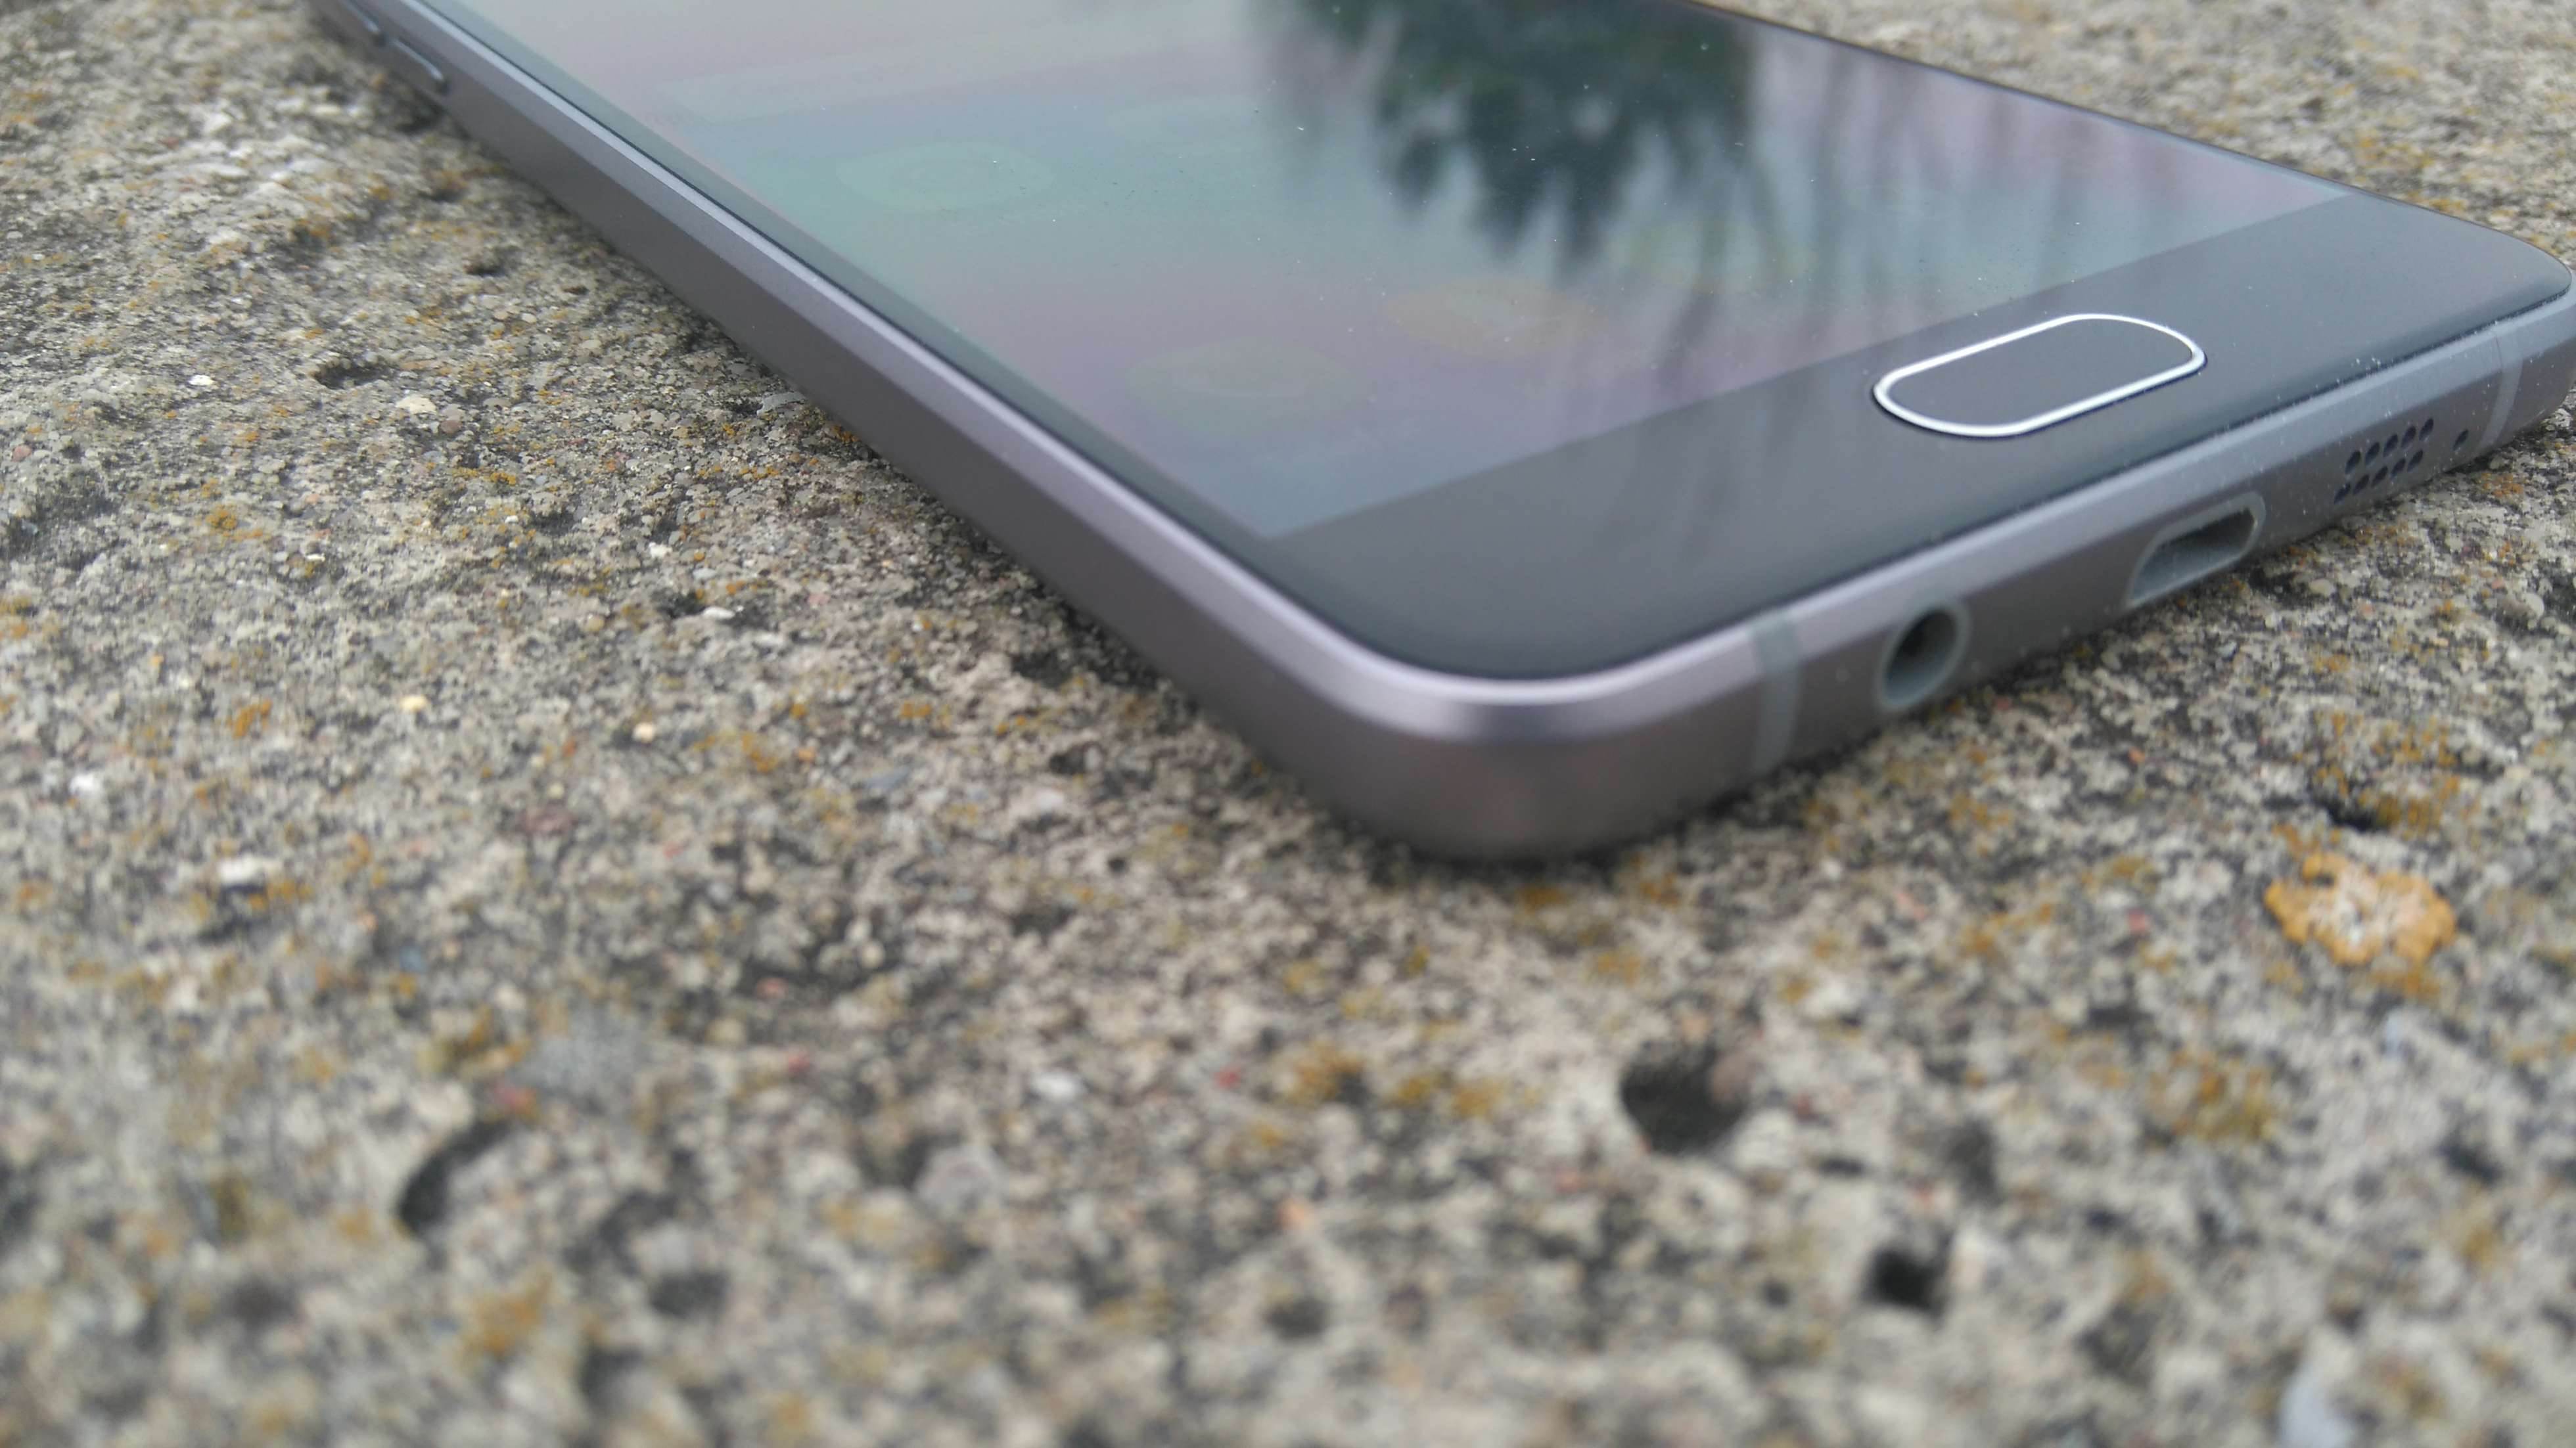 Samsung Galaxy A5 (2016) - recenzja urządzenia recenzje, polecane zalety, wady, Specyfikacja, Samsung Galaxy A5 2016, Samsung, recenzja Samsung Galaxy A5 (2016), Recenzja, polska recenzja, Opis, czy warto kupić Samsung Galaxy A5 (2016), cena, a5 z 2016, 2016  Samsung na nowo zapałał miłością do wysokiej jakości wykonania swoich mobilnych produktów, czego dowodem jest tegoroczna seria A. DSC 0014 1